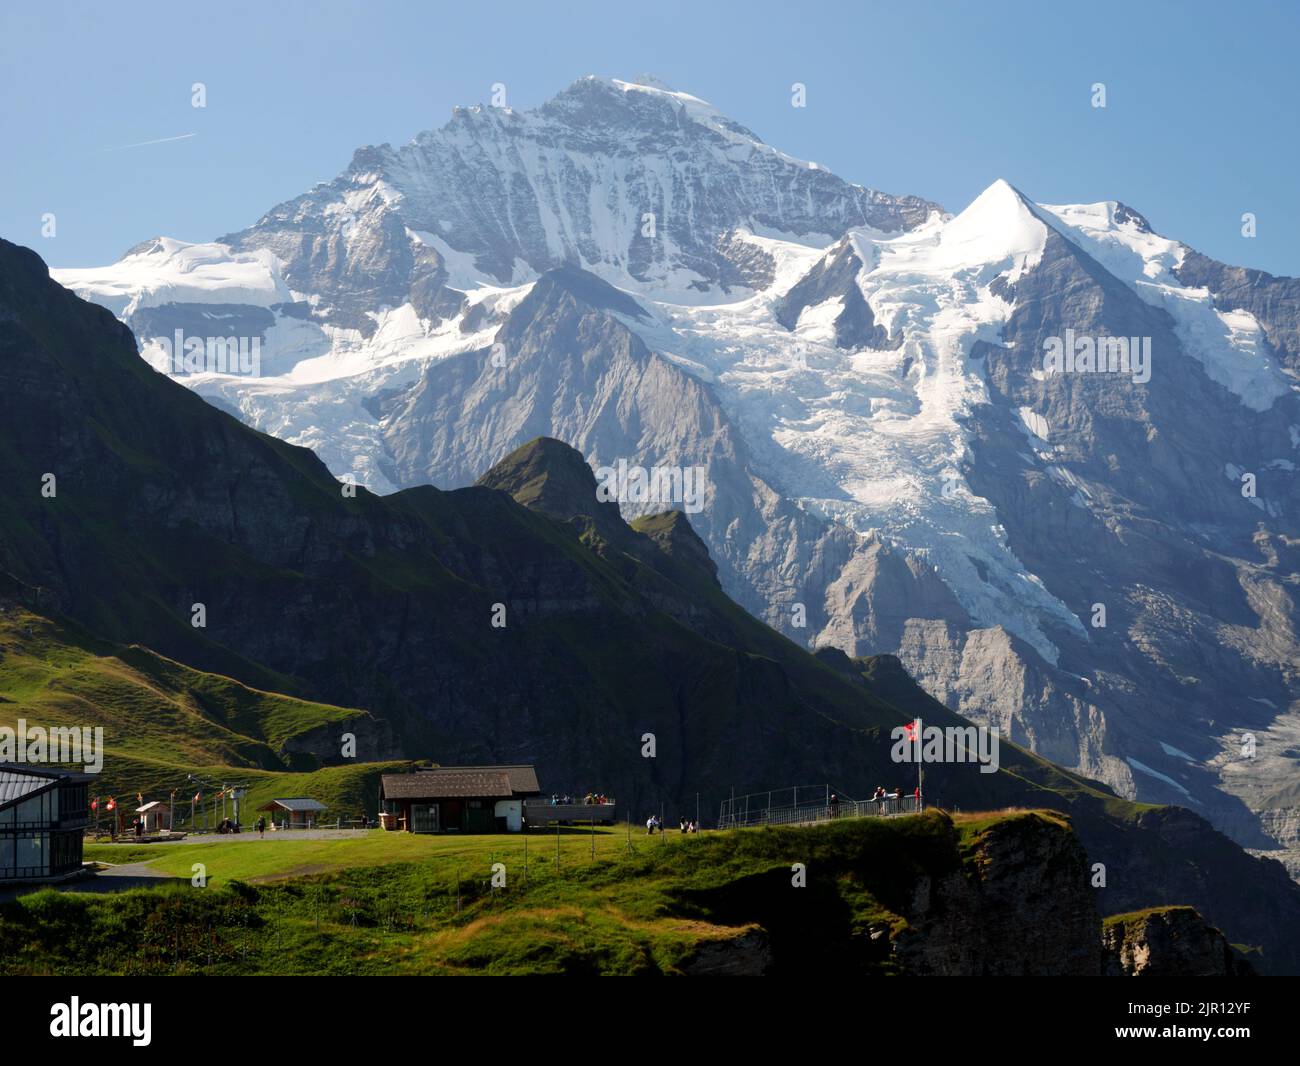 Mannlichen and the Jungfrau range, Wengen, Bernese Oberland, Switzerland. Stock Photo